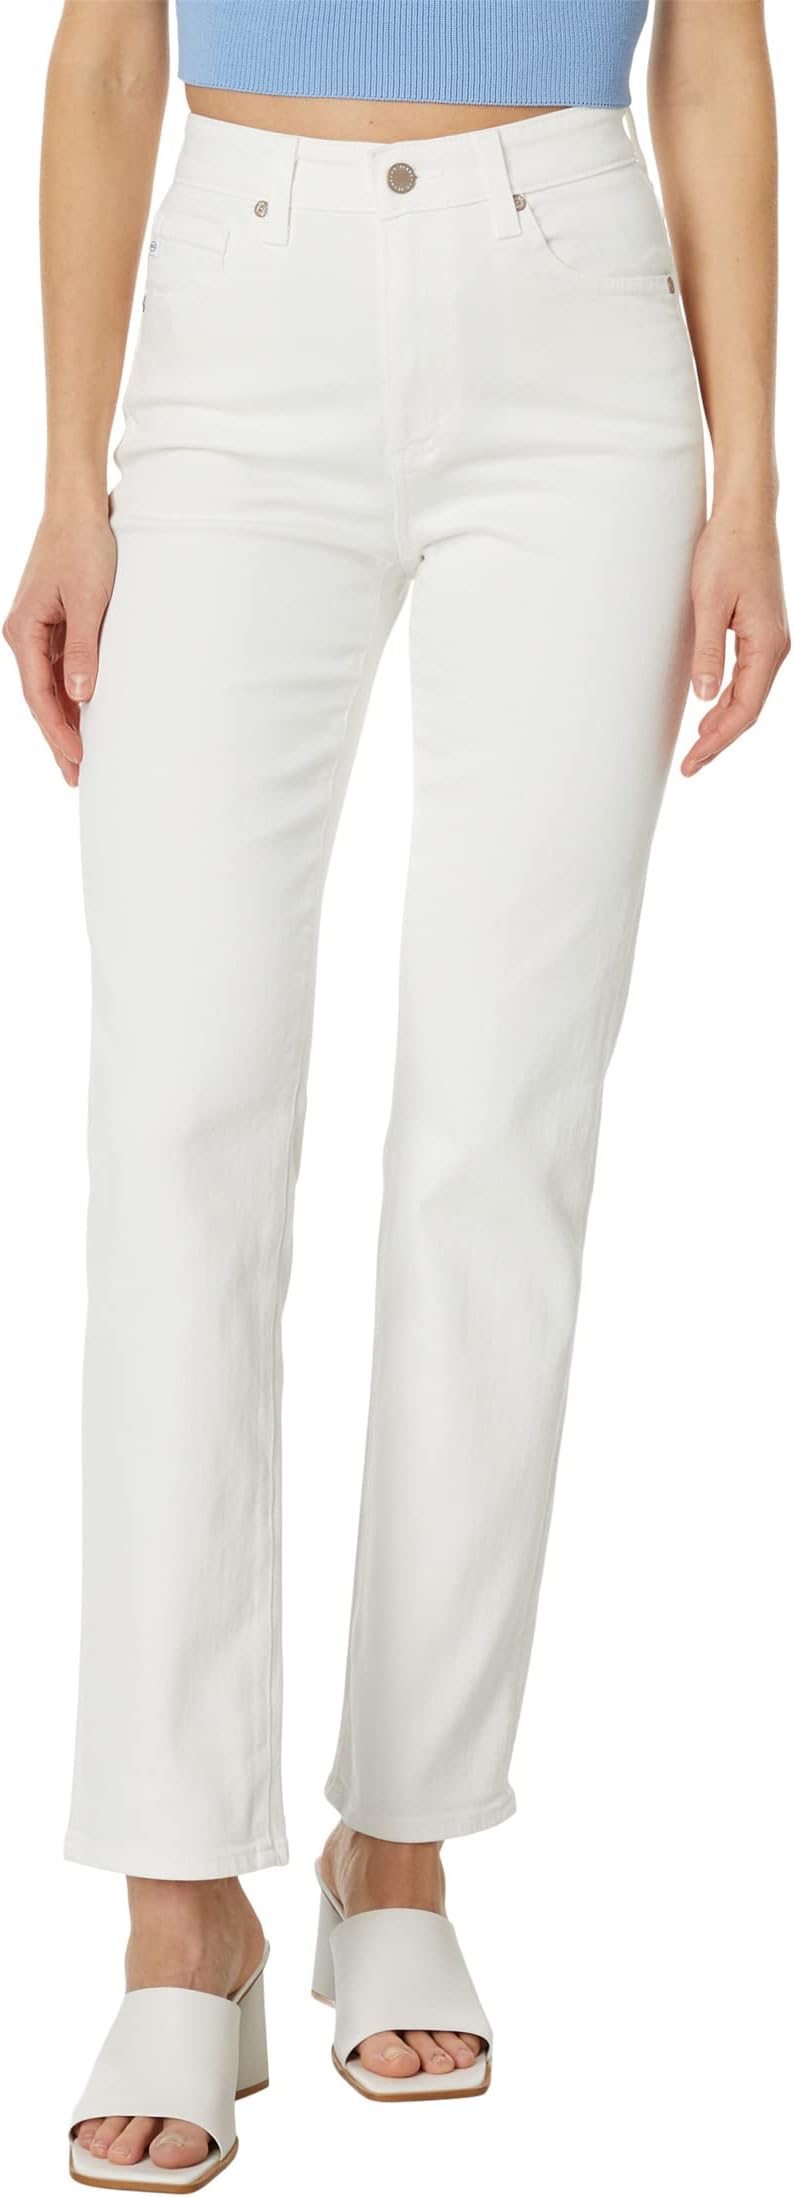 Джинсы Saige in Modern White AG Jeans, цвет Modern White